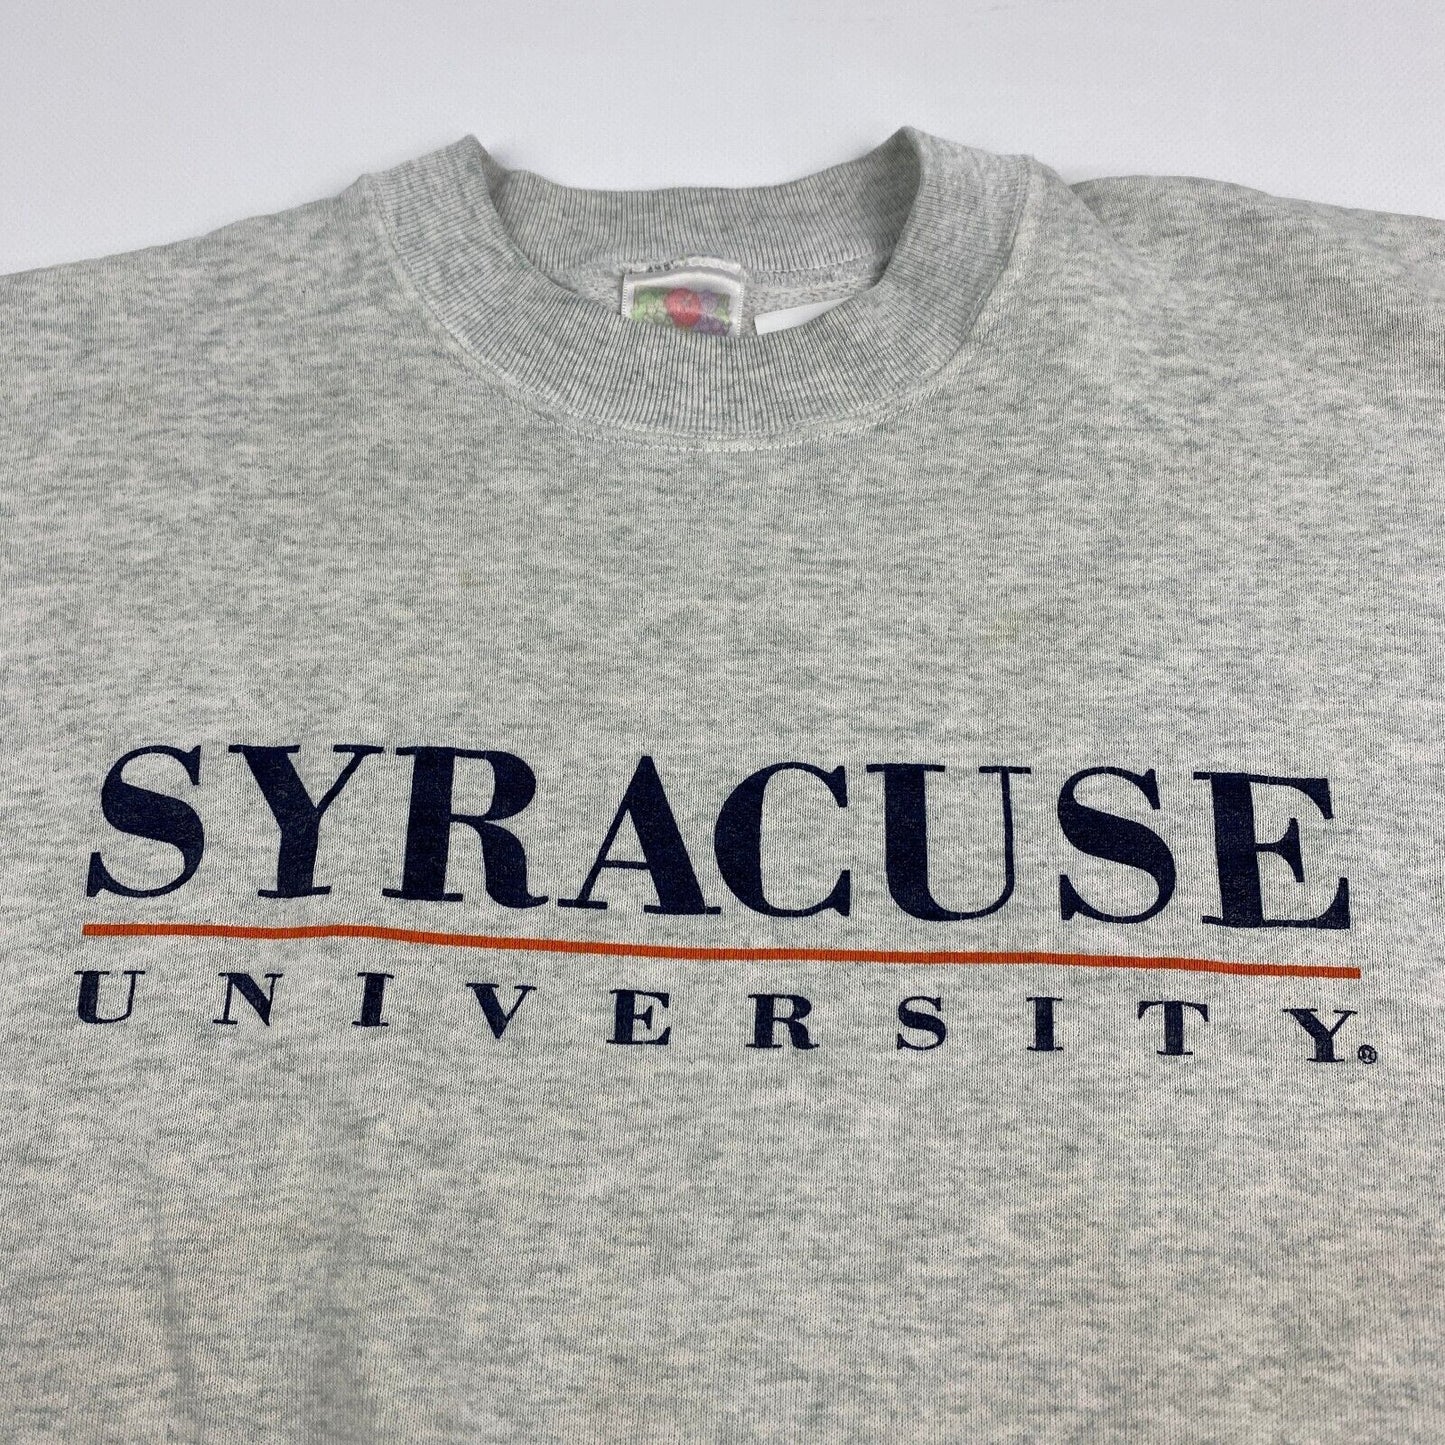 VINTAGE 90s Syracuse University Grey Crewneck Sweater sz XL Mens